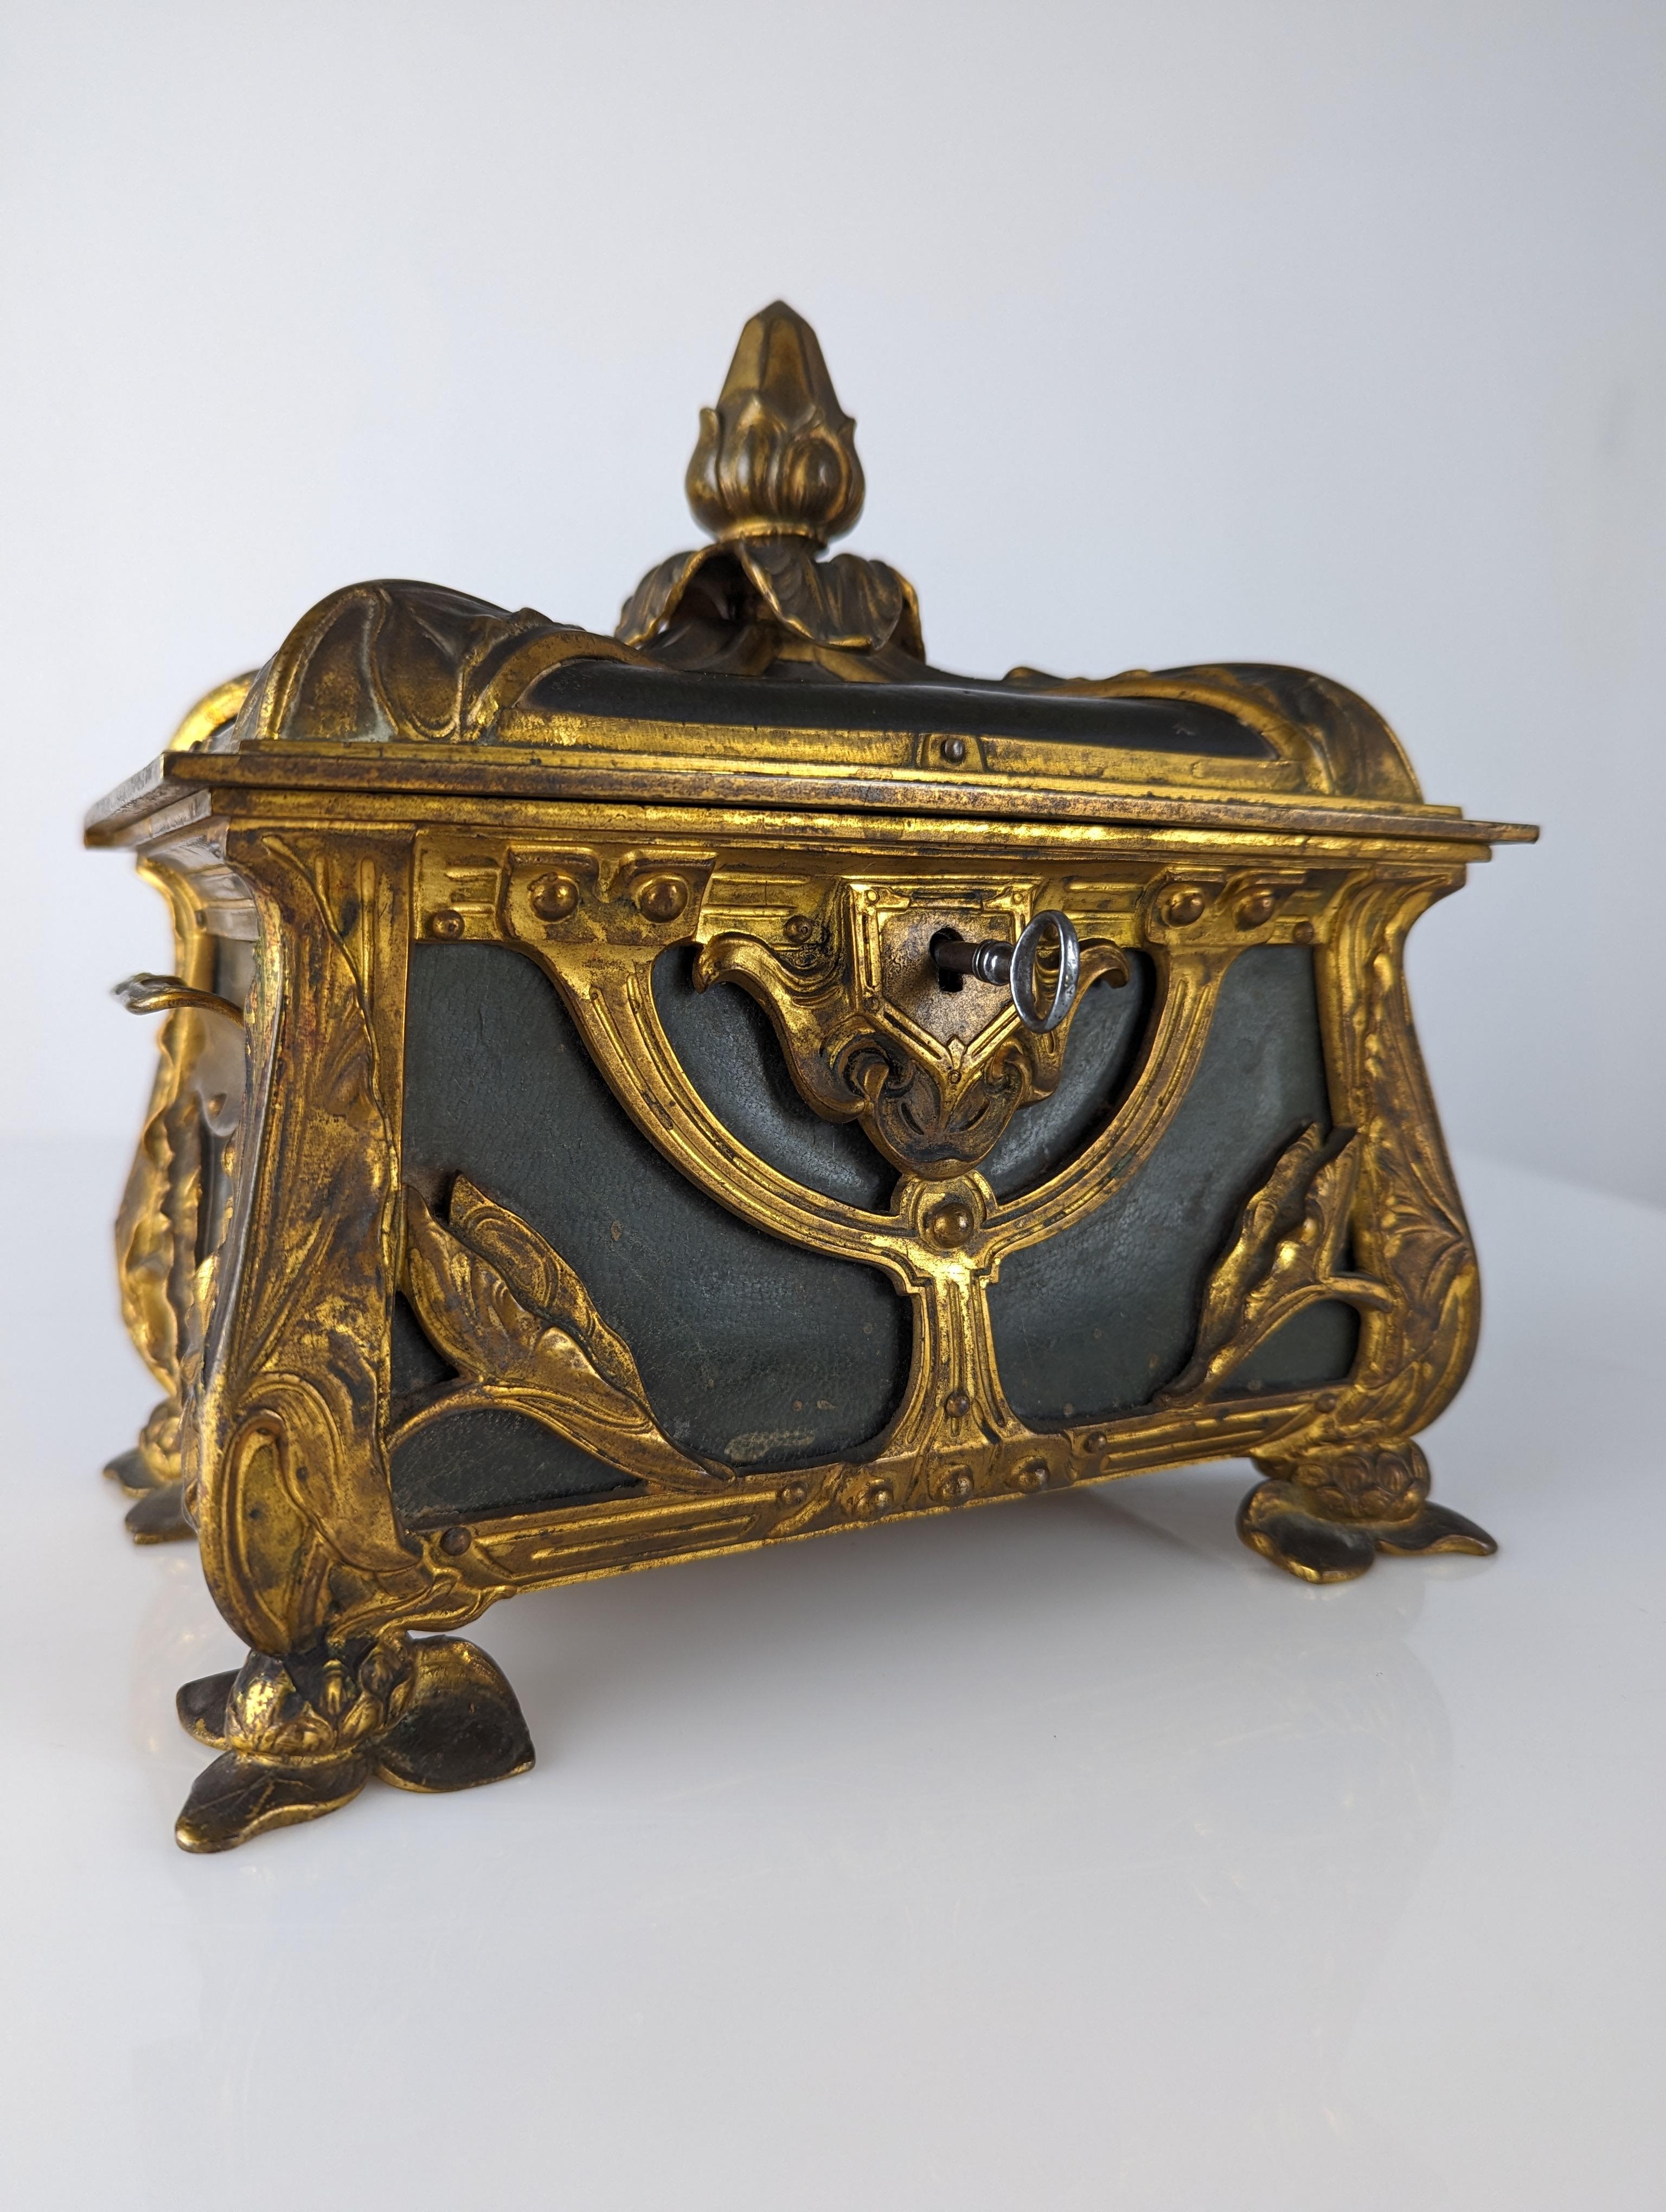 French Art Nouveau bombé jewelry box For Sale 1